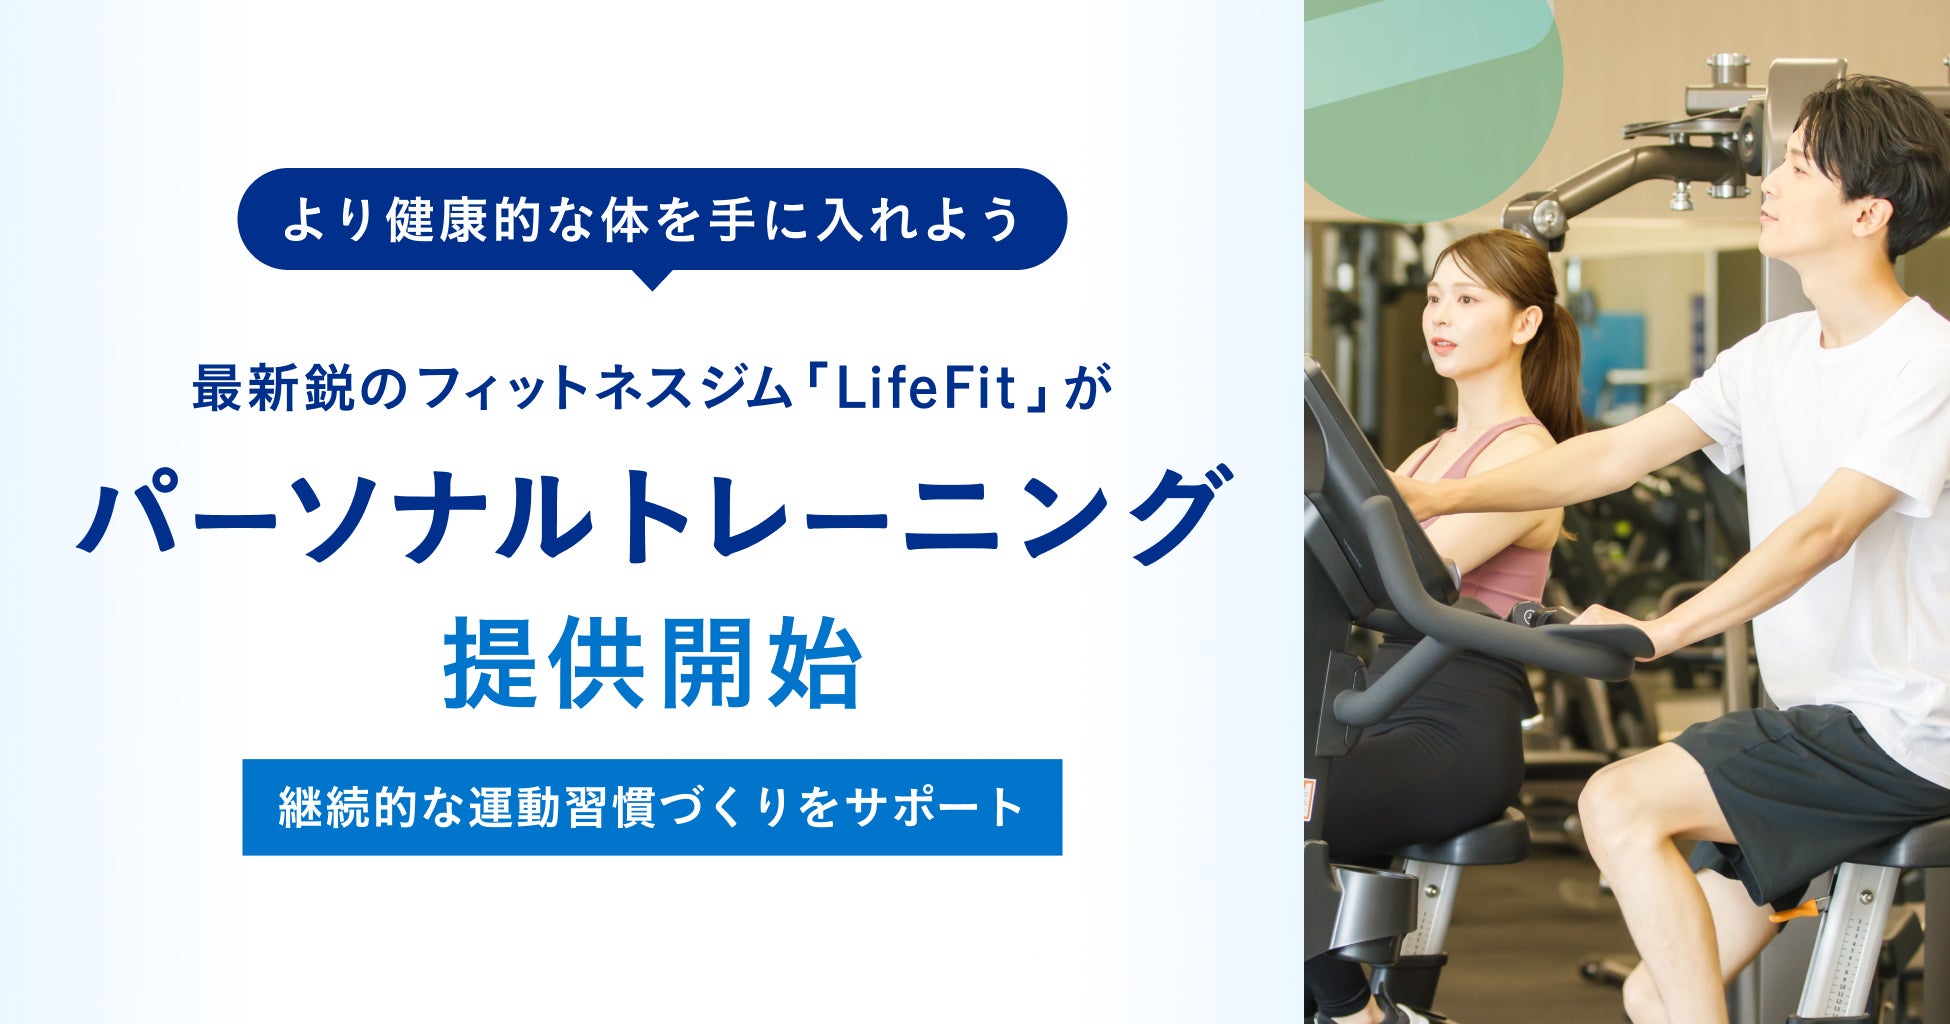 最新鋭のフィットネスジム「LifeFit」がパーソナルトレーニングの提供を開始！より健康的な体を手に入れよう~継続的な運動習慣づくりをサポートします~